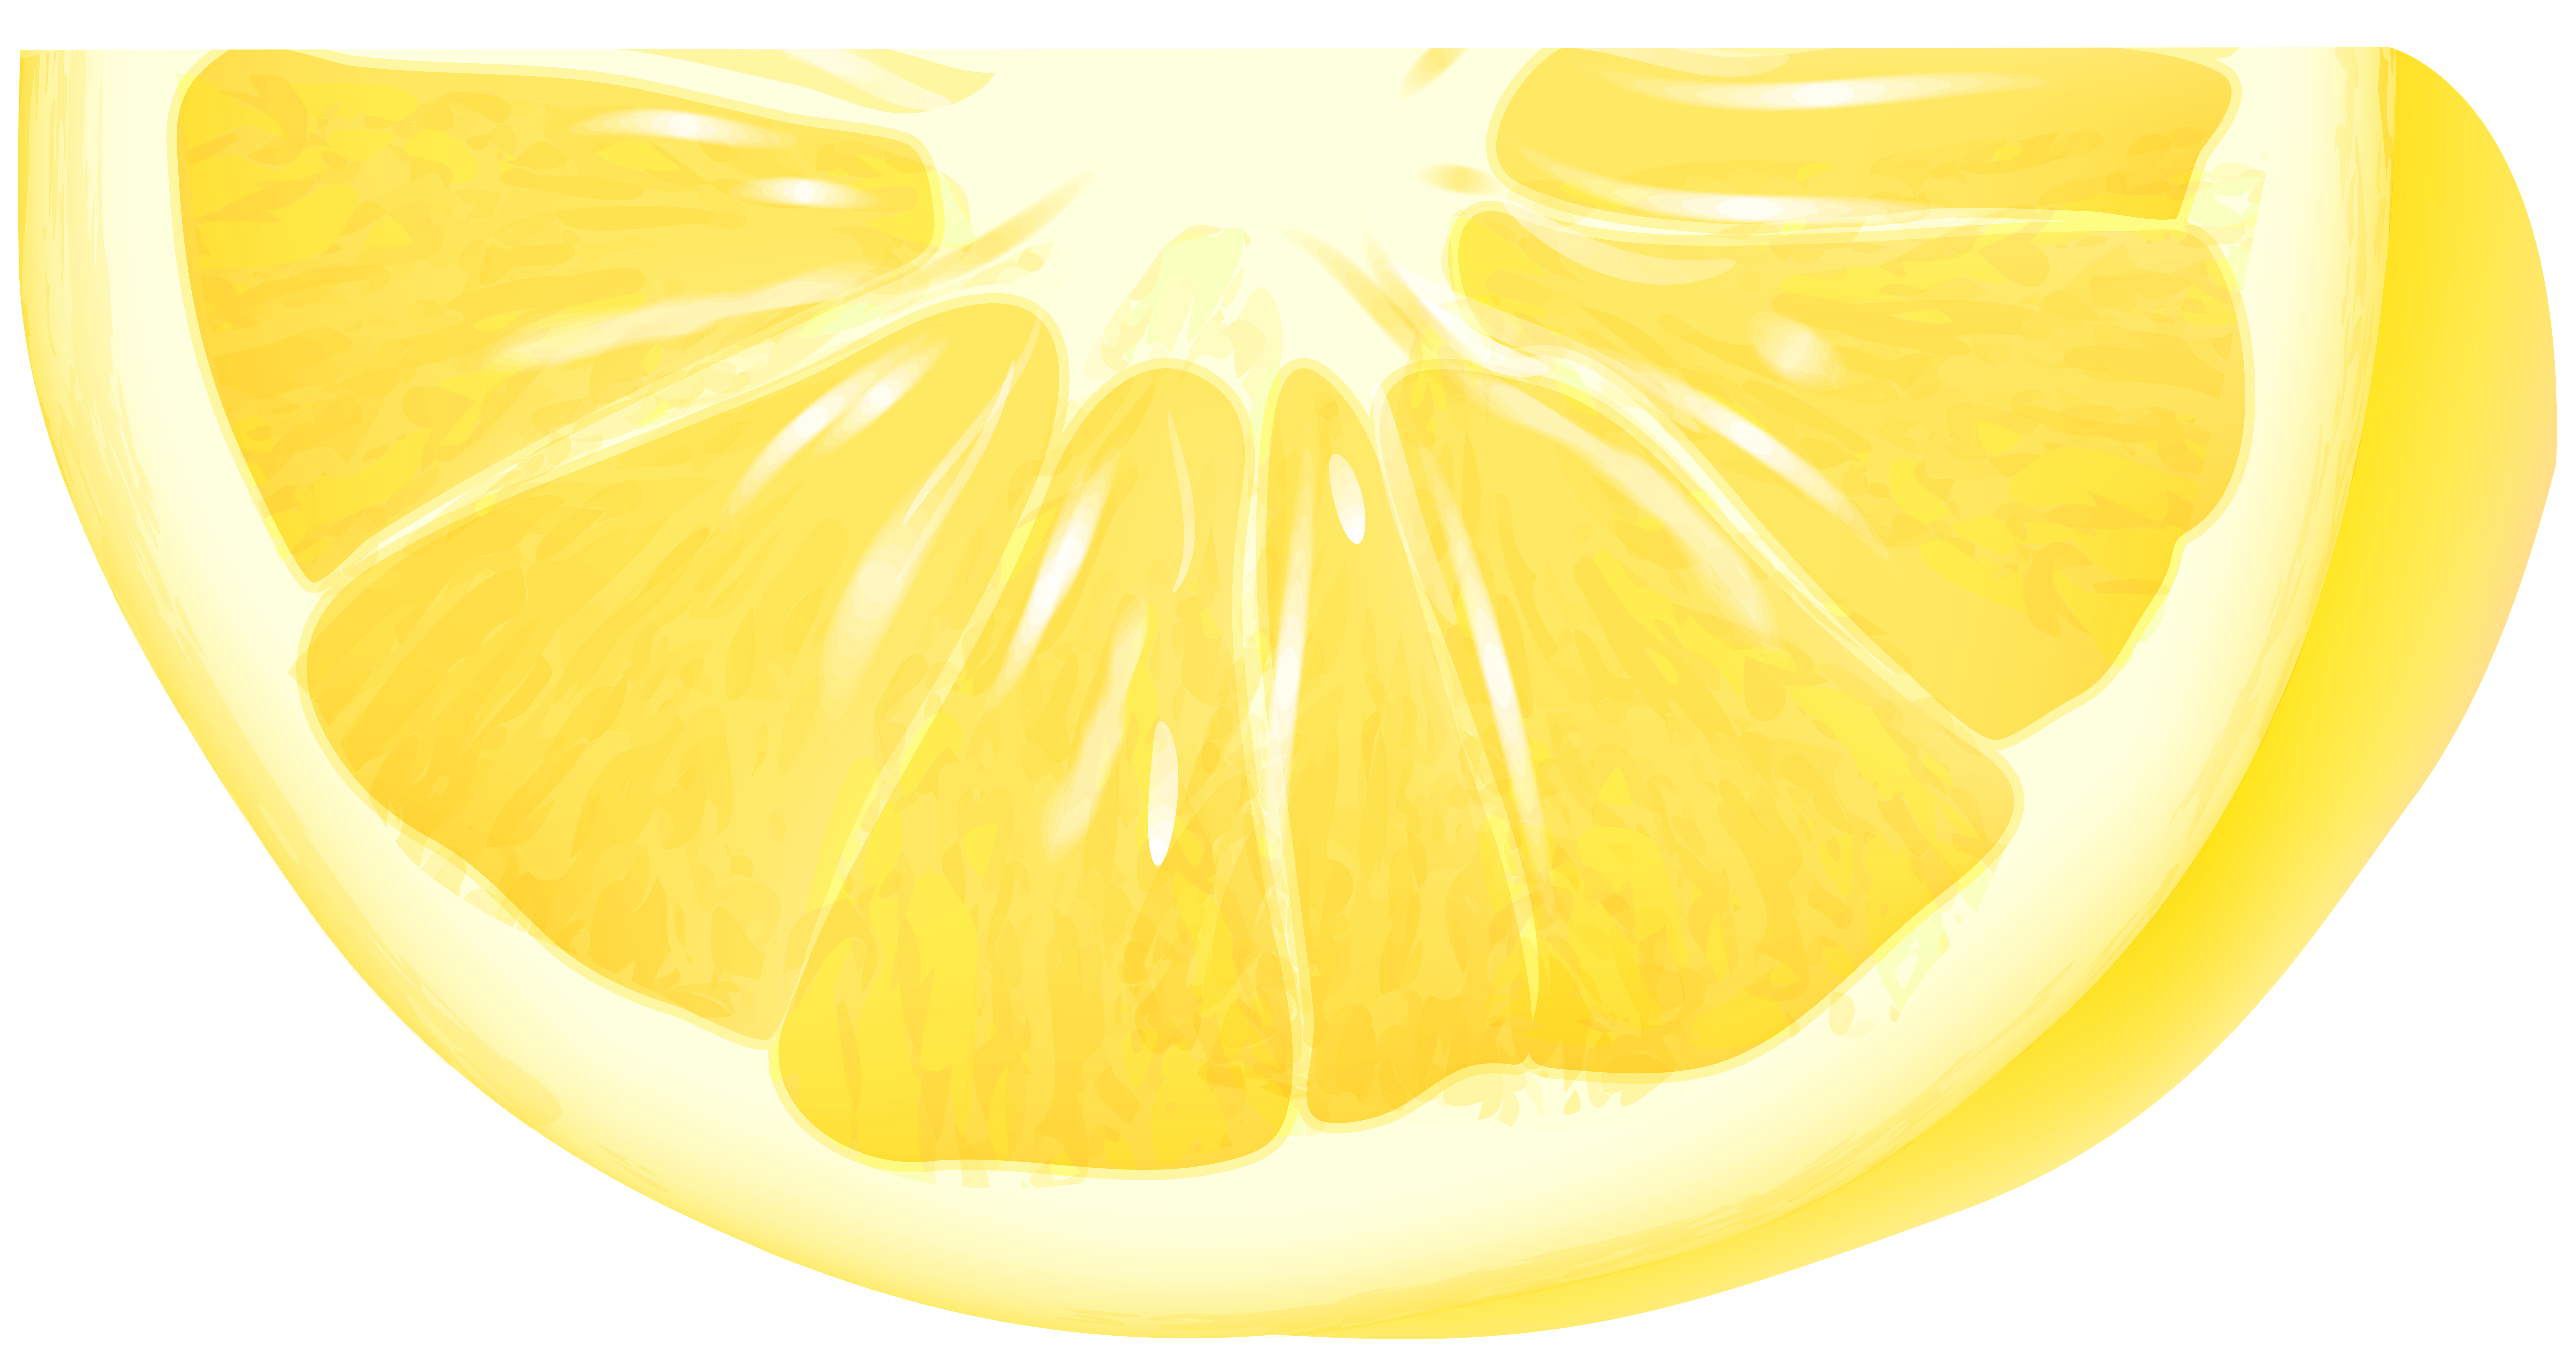 lemon clipart heart